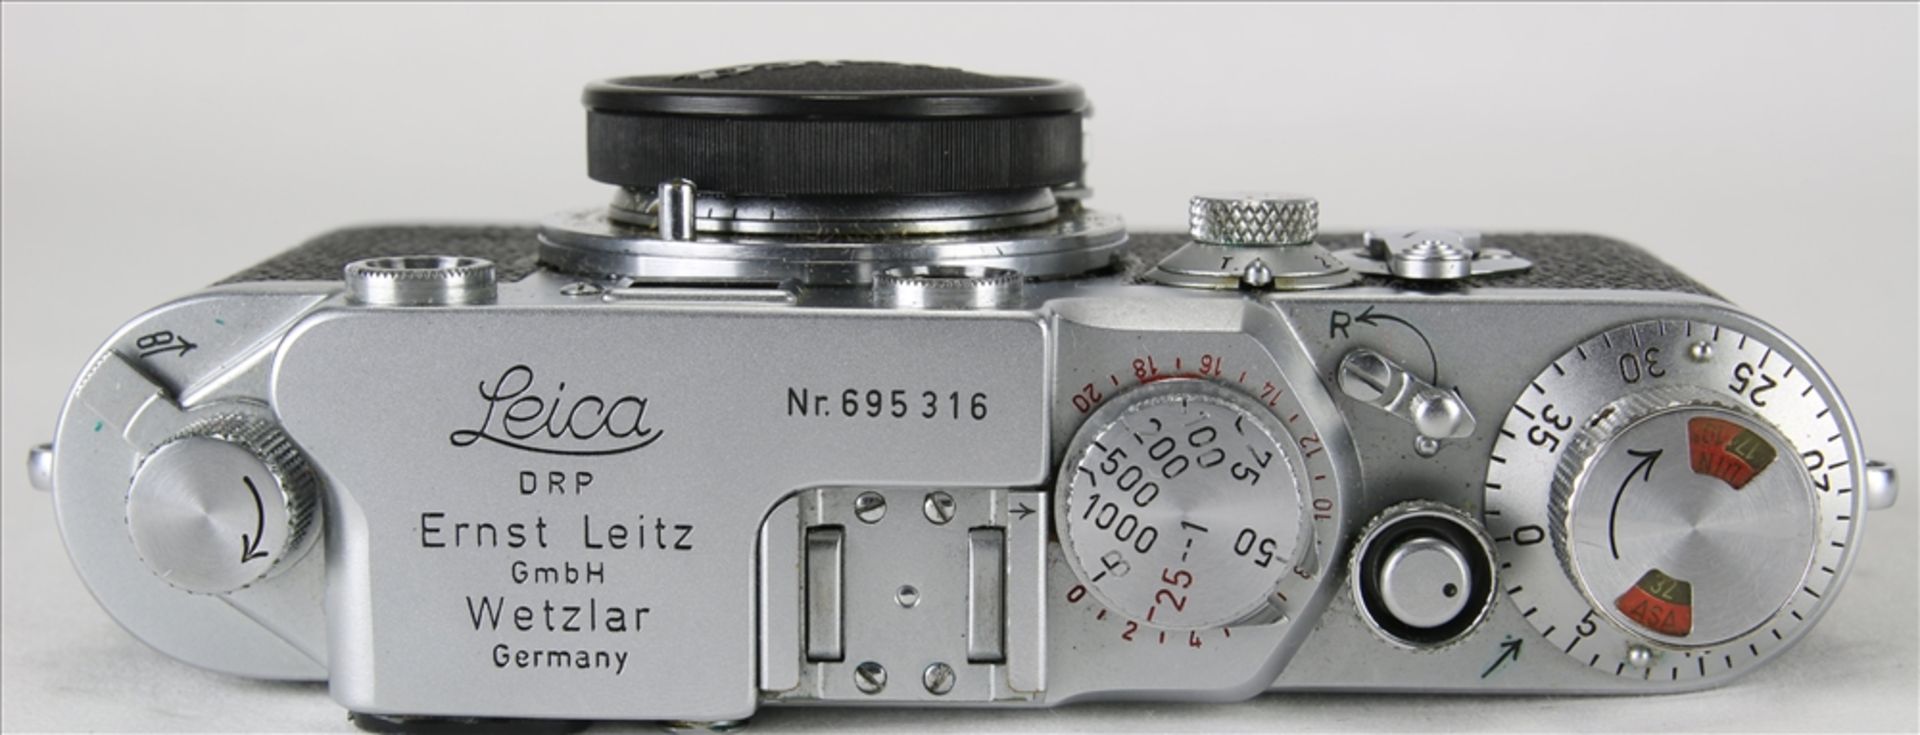 Leica III f vintage Kamera Ernst Leitz GmbH Wetzlar 1954. Nummer 695316. Elmar f=5, 1:3,5 - Bild 5 aus 6